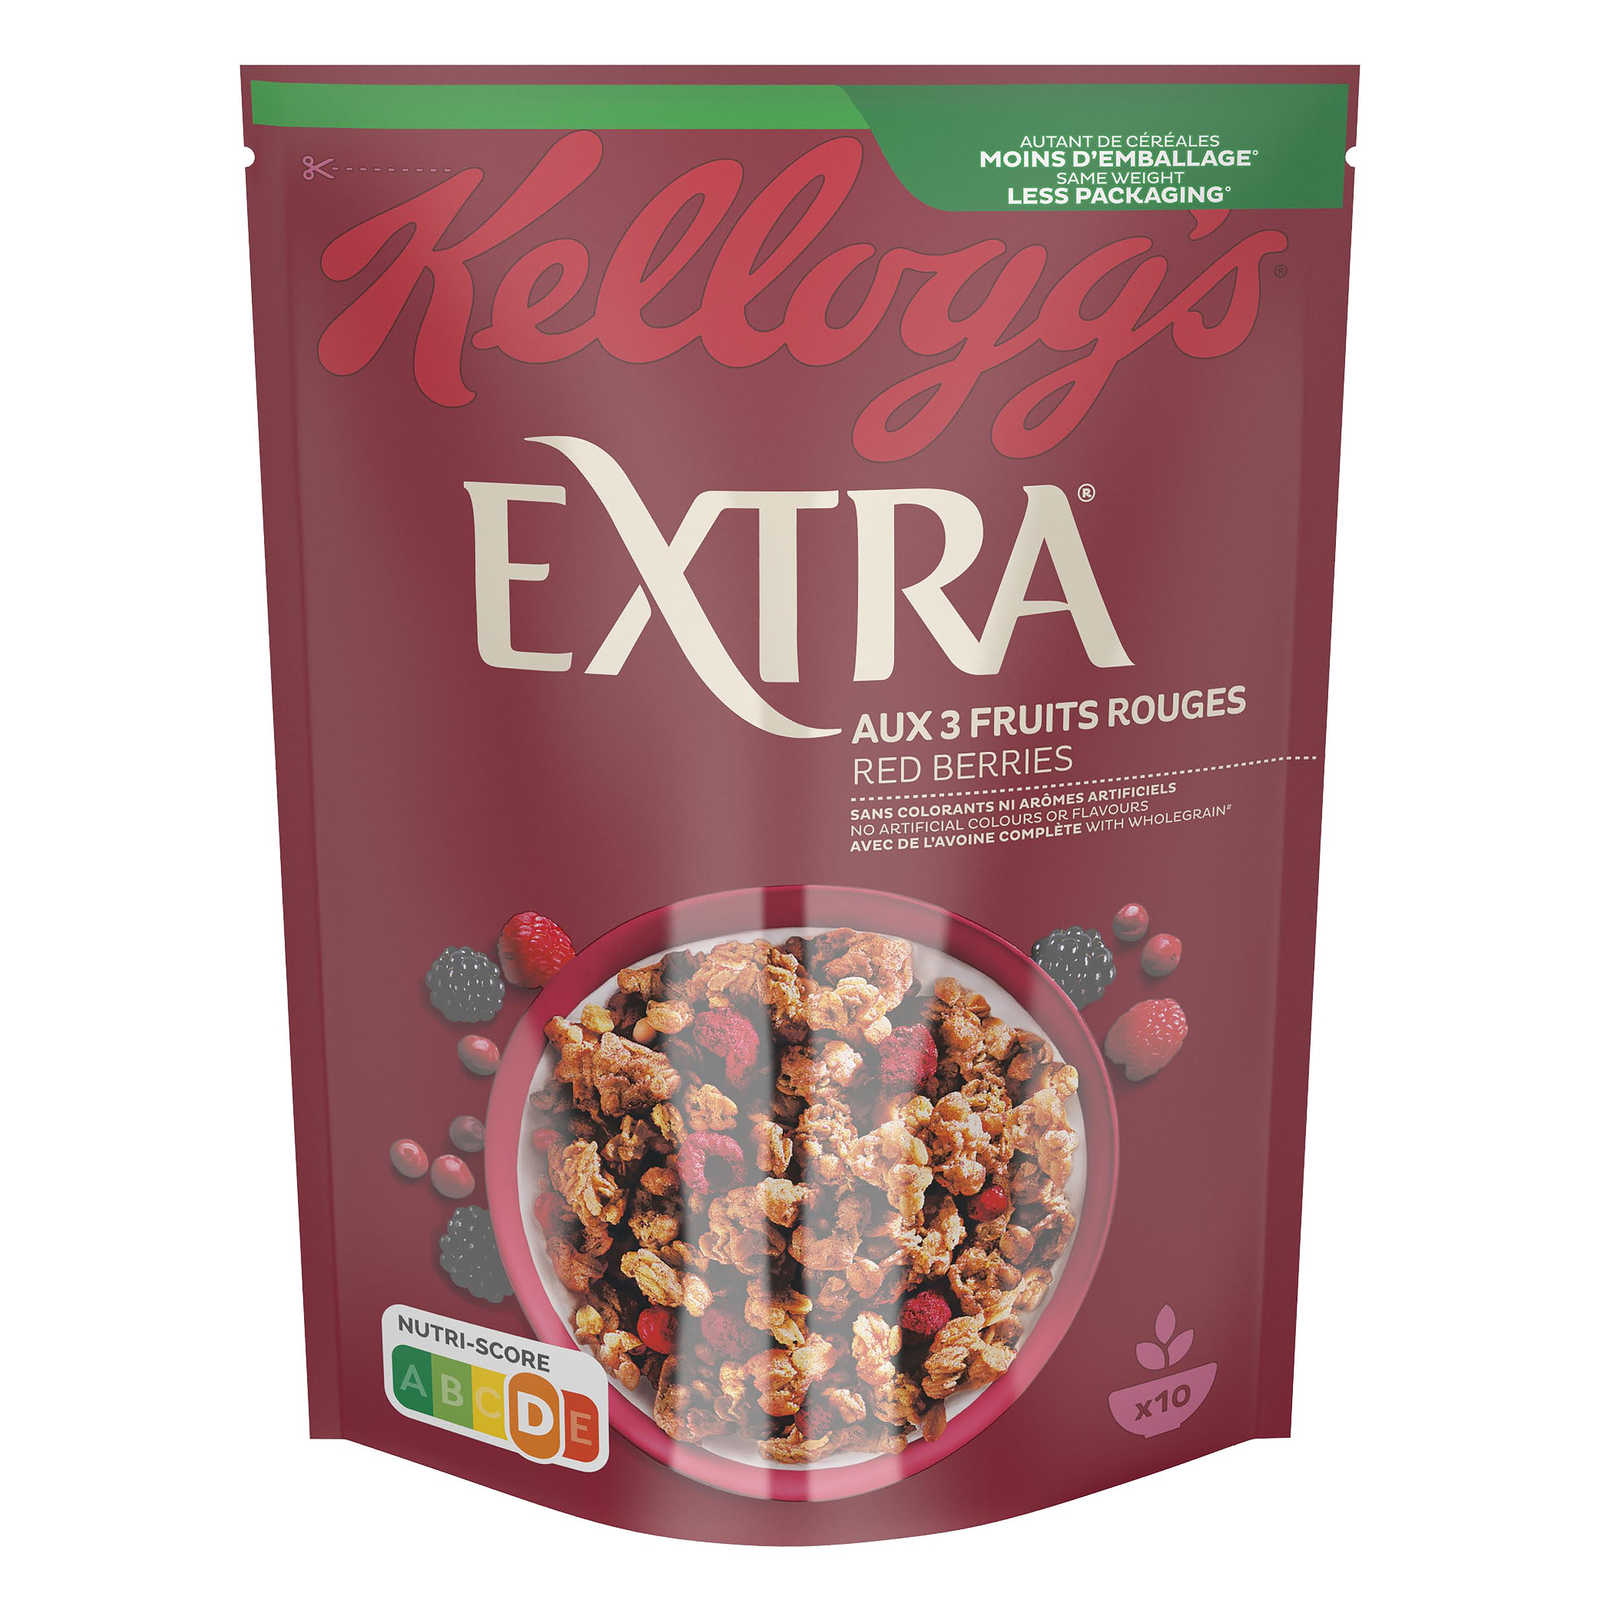 Kellogg's-Extra